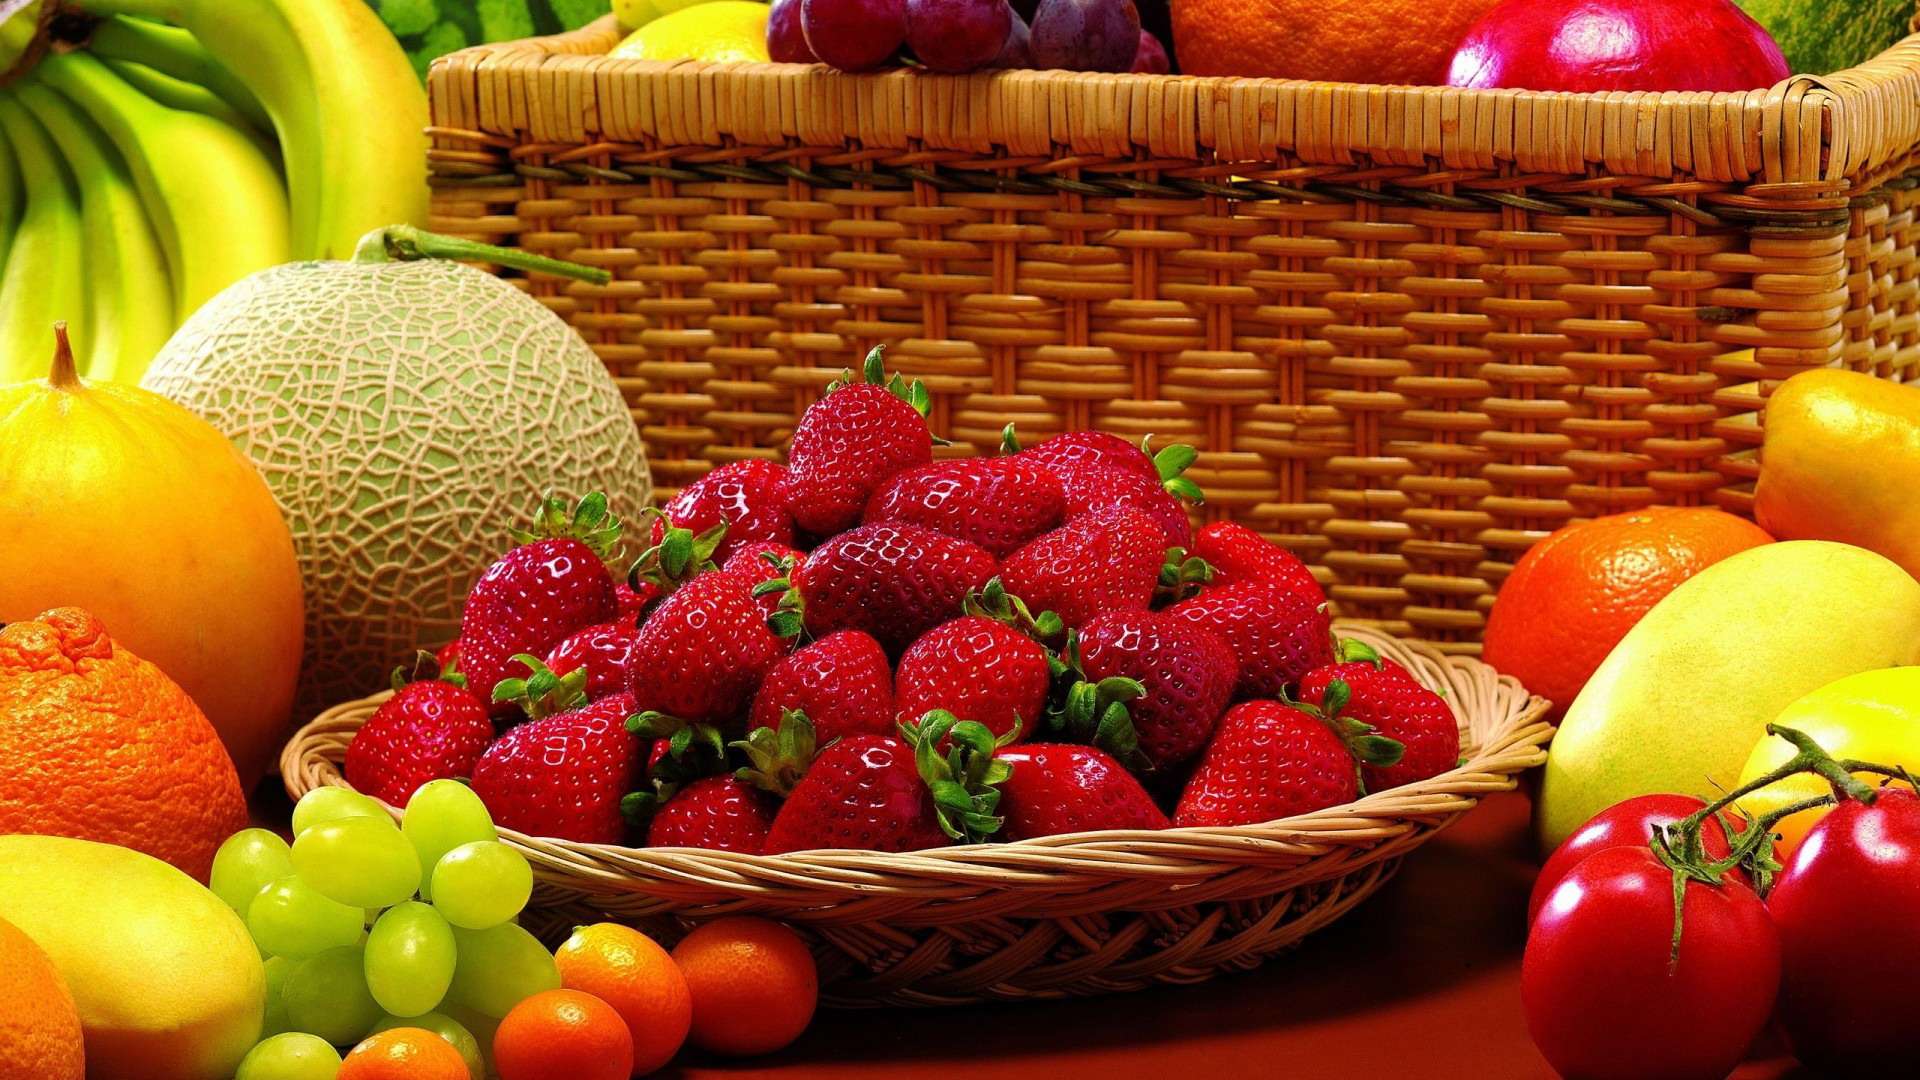 Обои на рабочий стол с фруктами и ягодами на весь экран